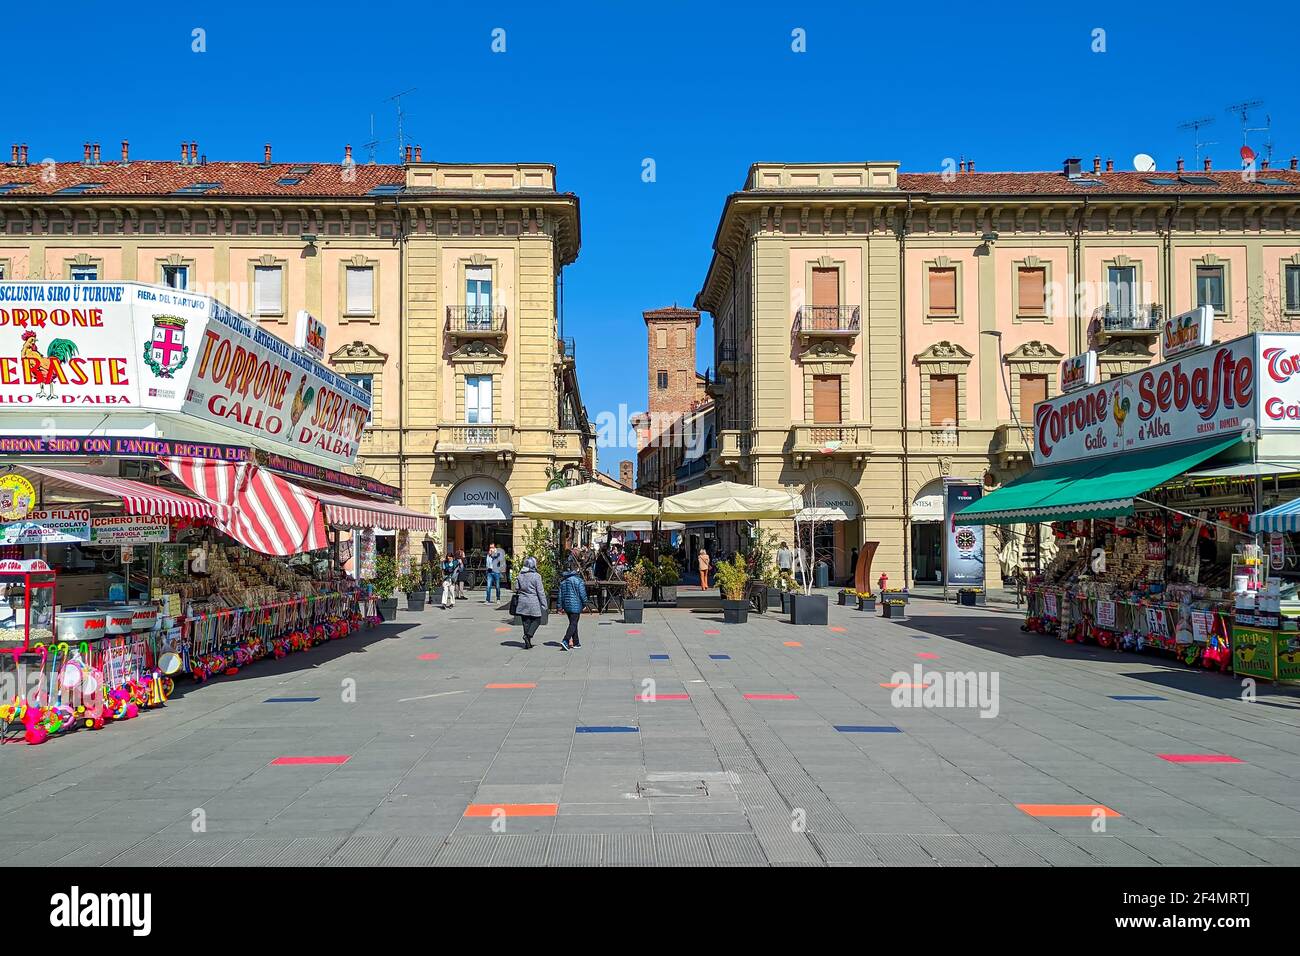 Sebaste mobile stands vendant torrone et autres bonbons traditionnels et sucreries sur la piazza Ferrero à Alba, Italie. Banque D'Images